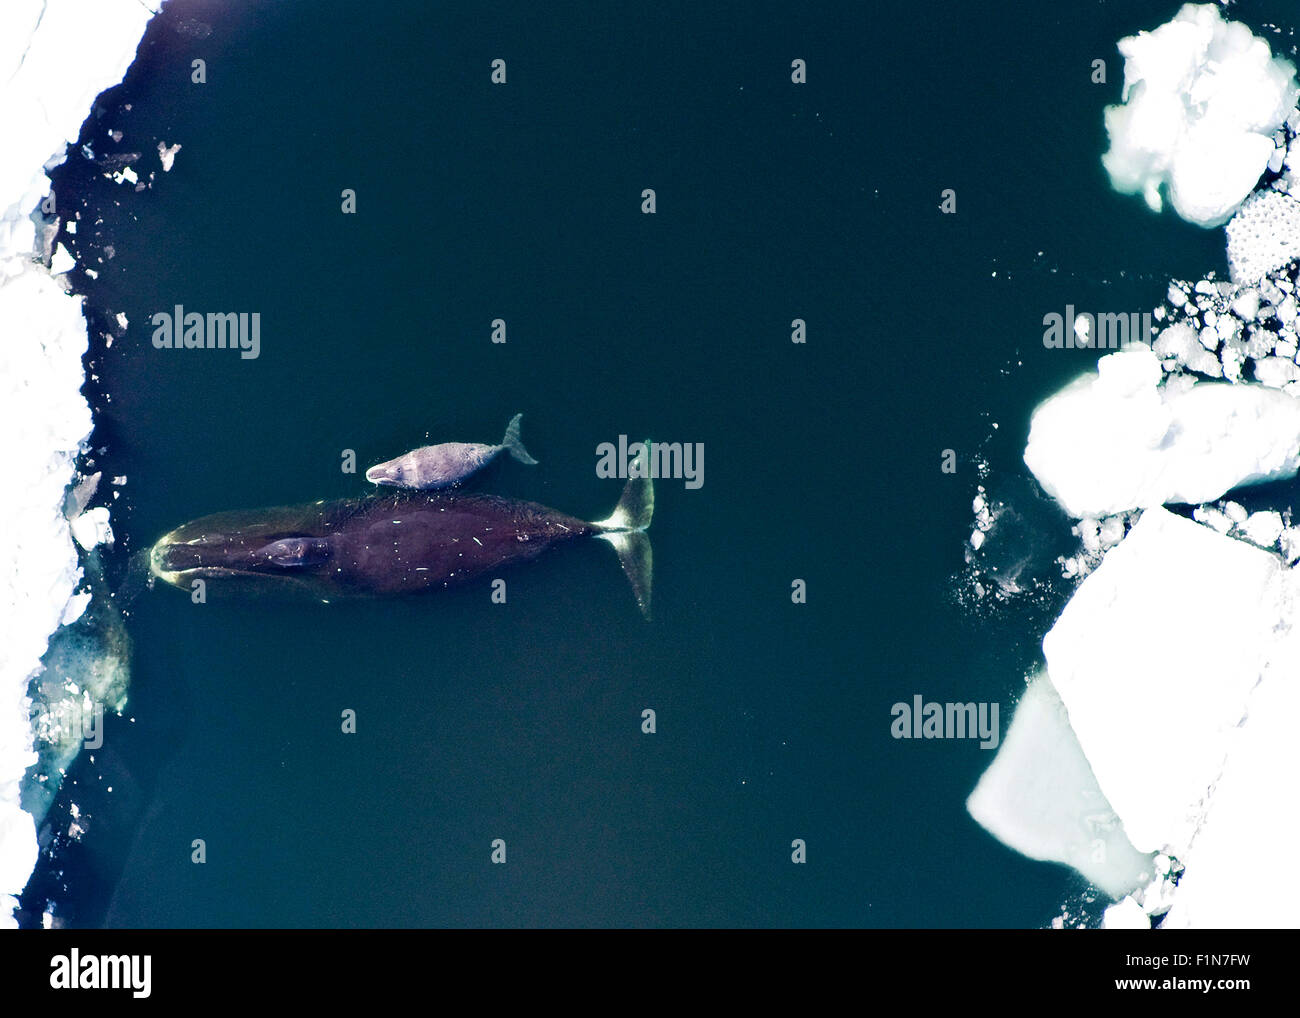 Un Bowhead whale e vitello nell'Oceano Artico. Balene Bowhead può raggiungere fino a 66 piedi o 20 metri di lunghezza e peso 100 t. Foto Stock